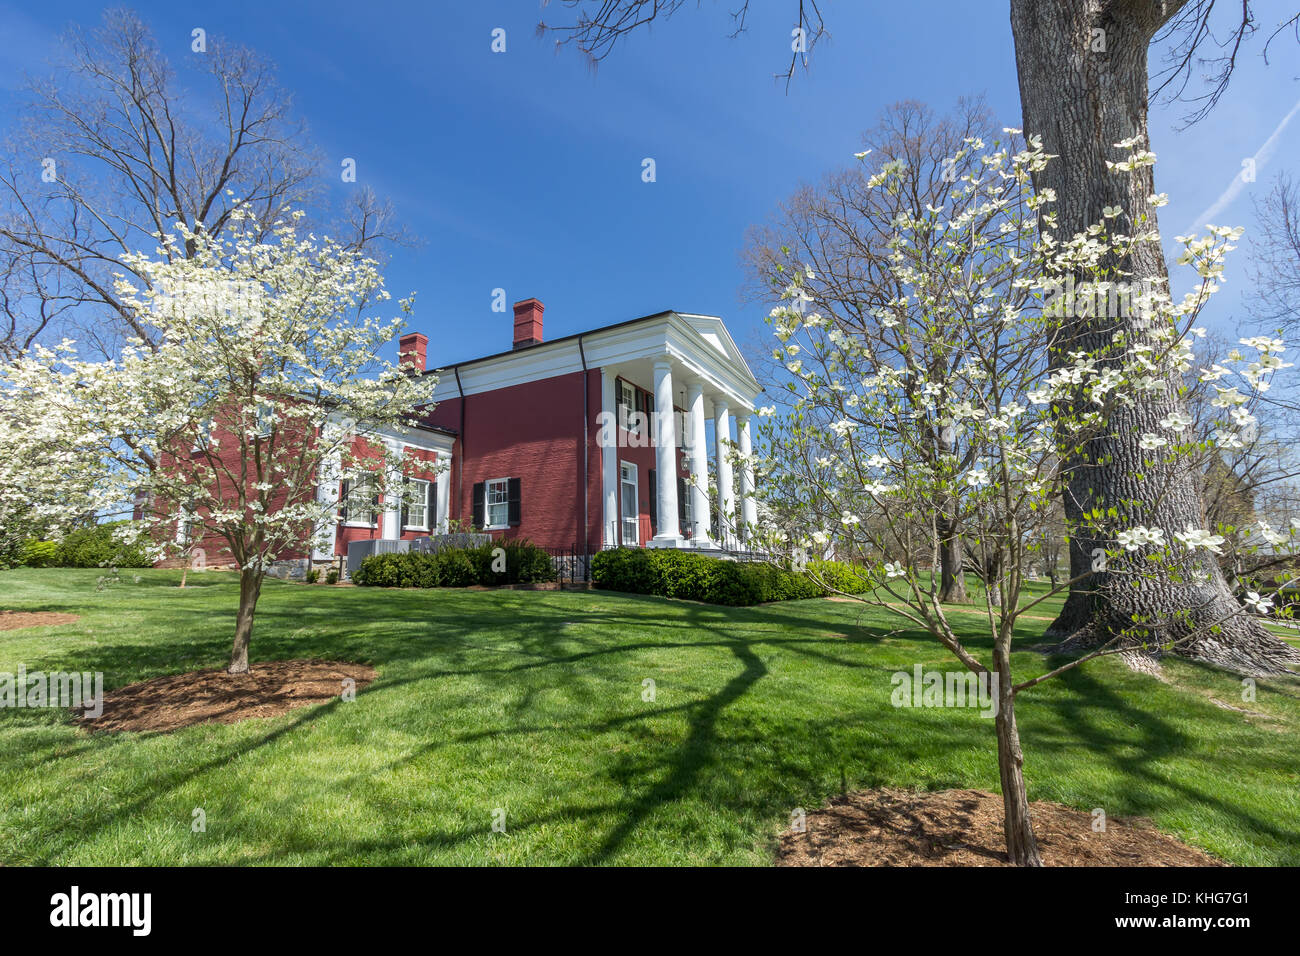 Lee-jackson house à Washington and Lee University à Lexington, en Virginie. Banque D'Images